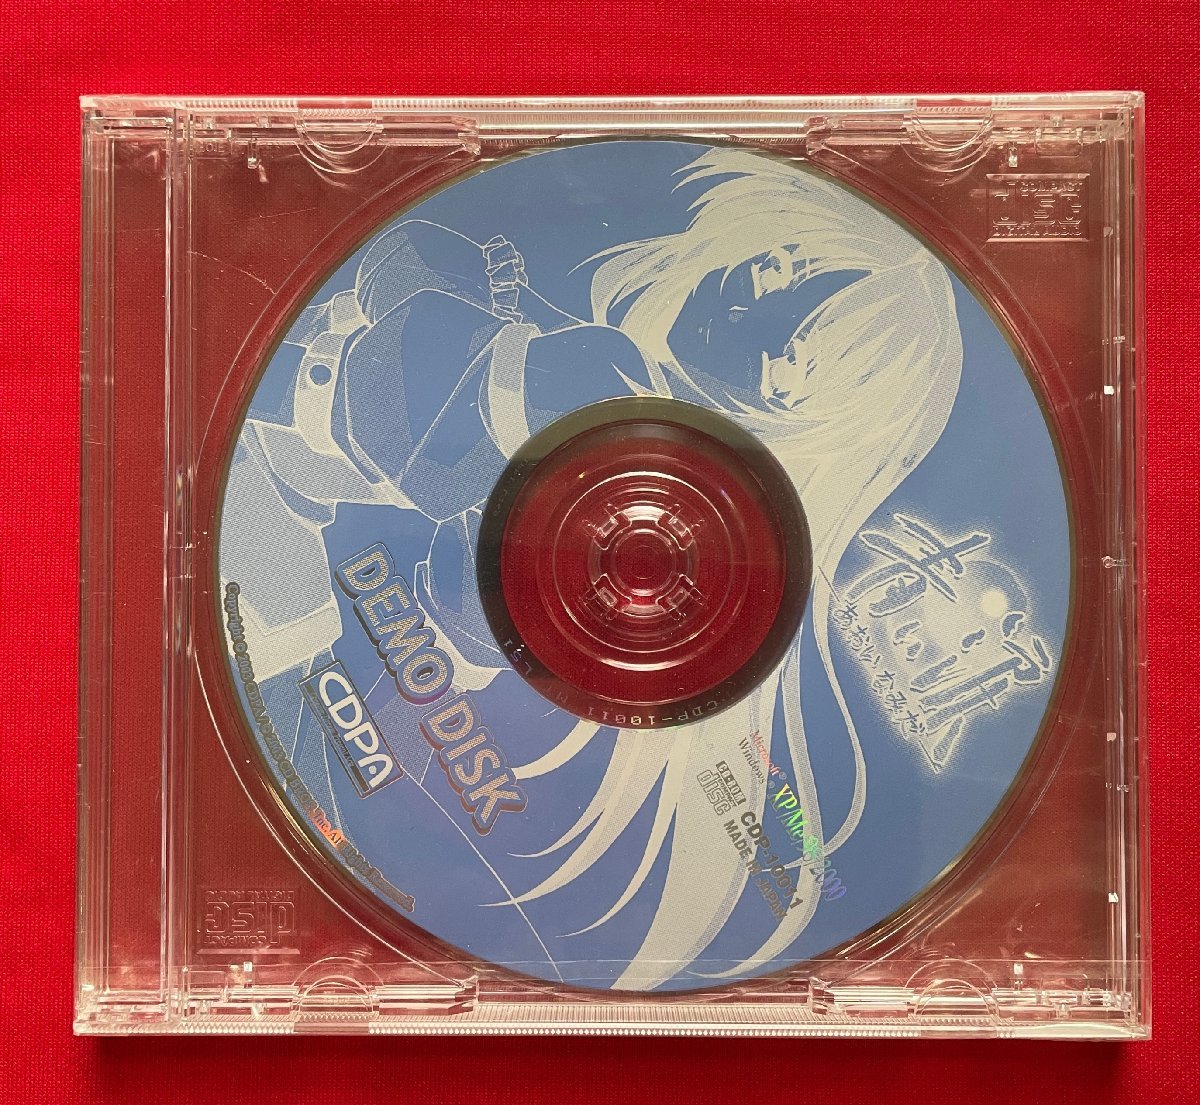 CD-ROM  синий  ...-...   ...- DEMO DISK for Windows XP/Me/98/2000 поддержка   товара нет в свободной продаже   в настоящее время  моно   редко встречающийся  D1385